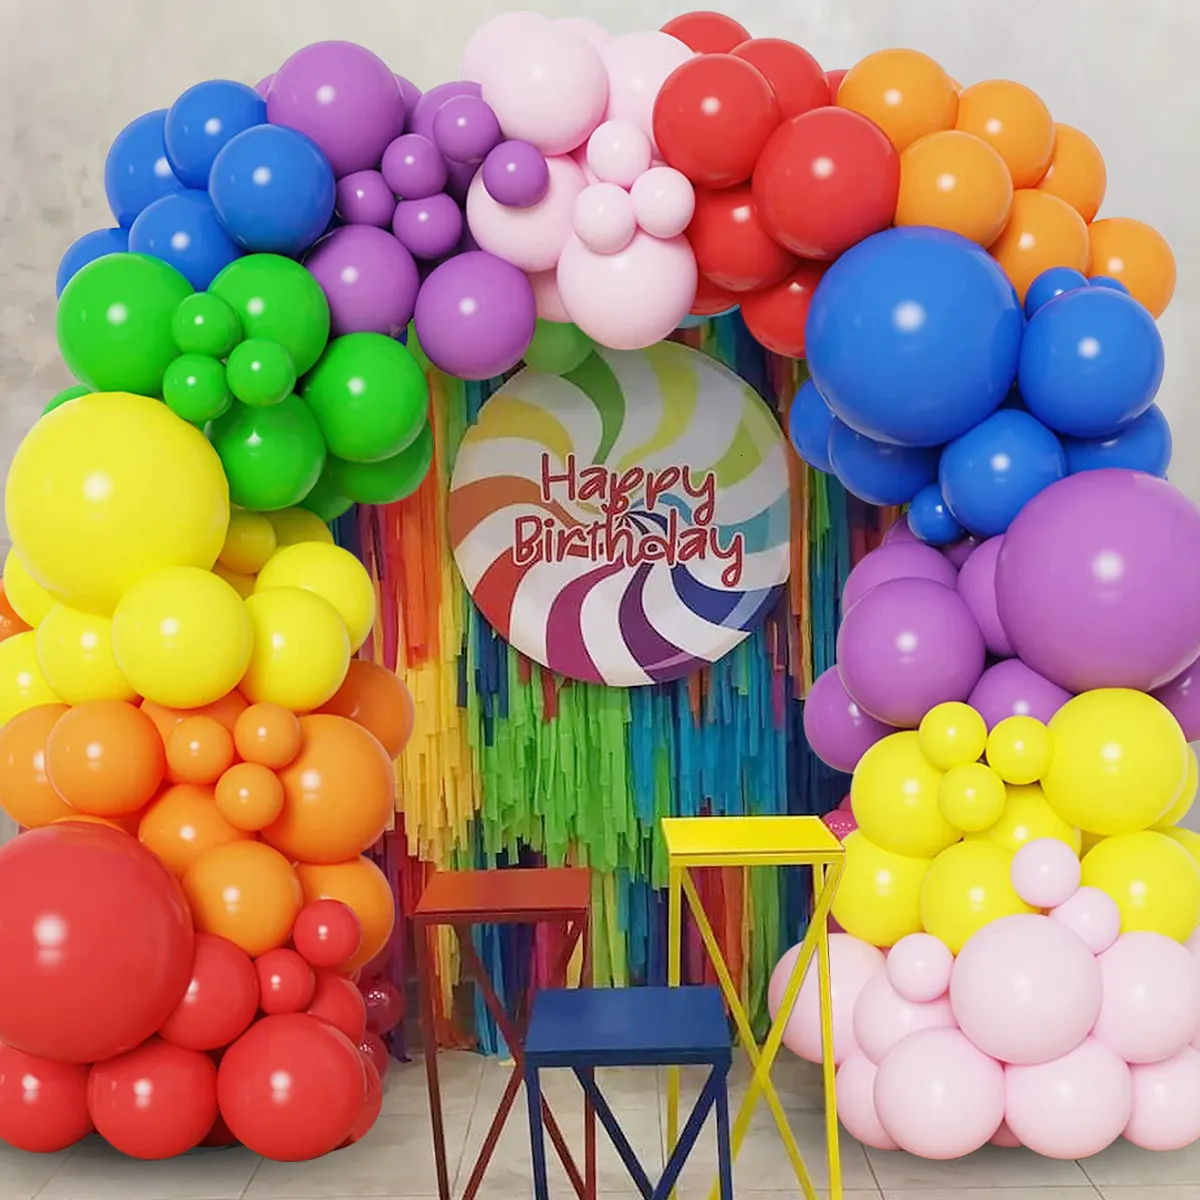 Другое мероприятие поставлено поставляется красочный радужный воздушный шар в гирлянде арка набор многоцветный латекс